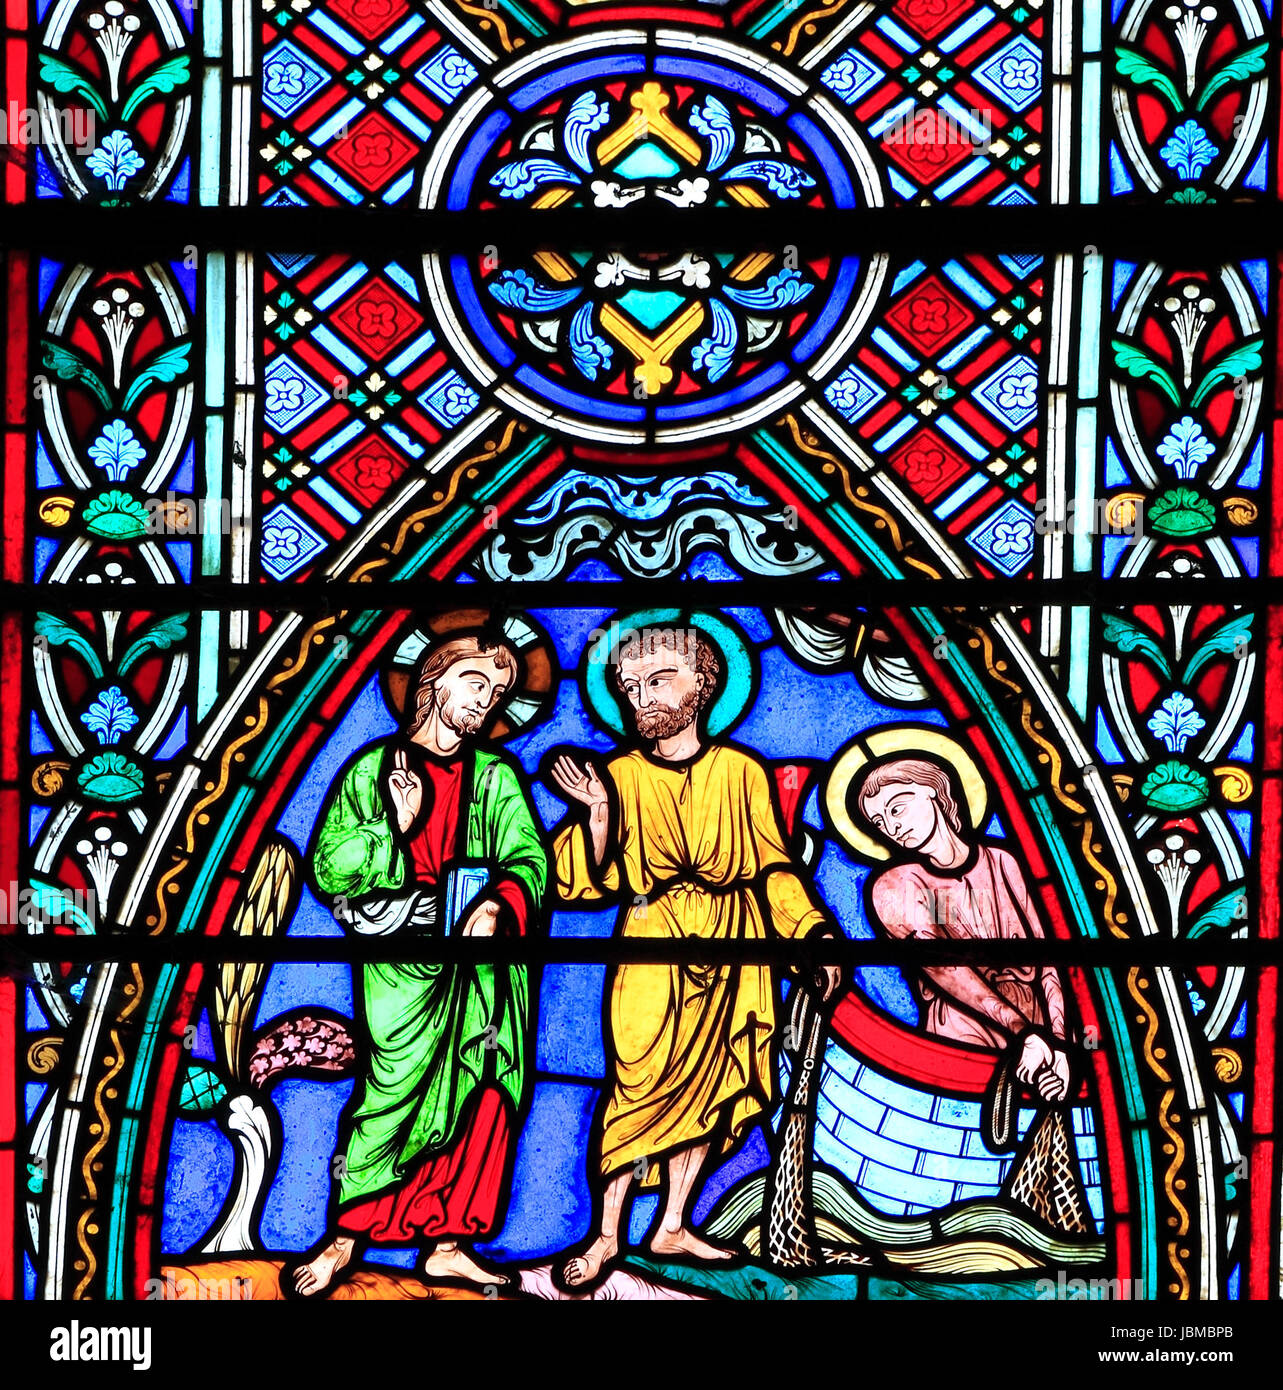 Vie de Jésus, de la fenêtre de l'église, vitraux de Feltwell par Didron de Paris, 1859, Jésus avec les Apôtres Pierre et André, filet de pêche casting en mer o Banque D'Images